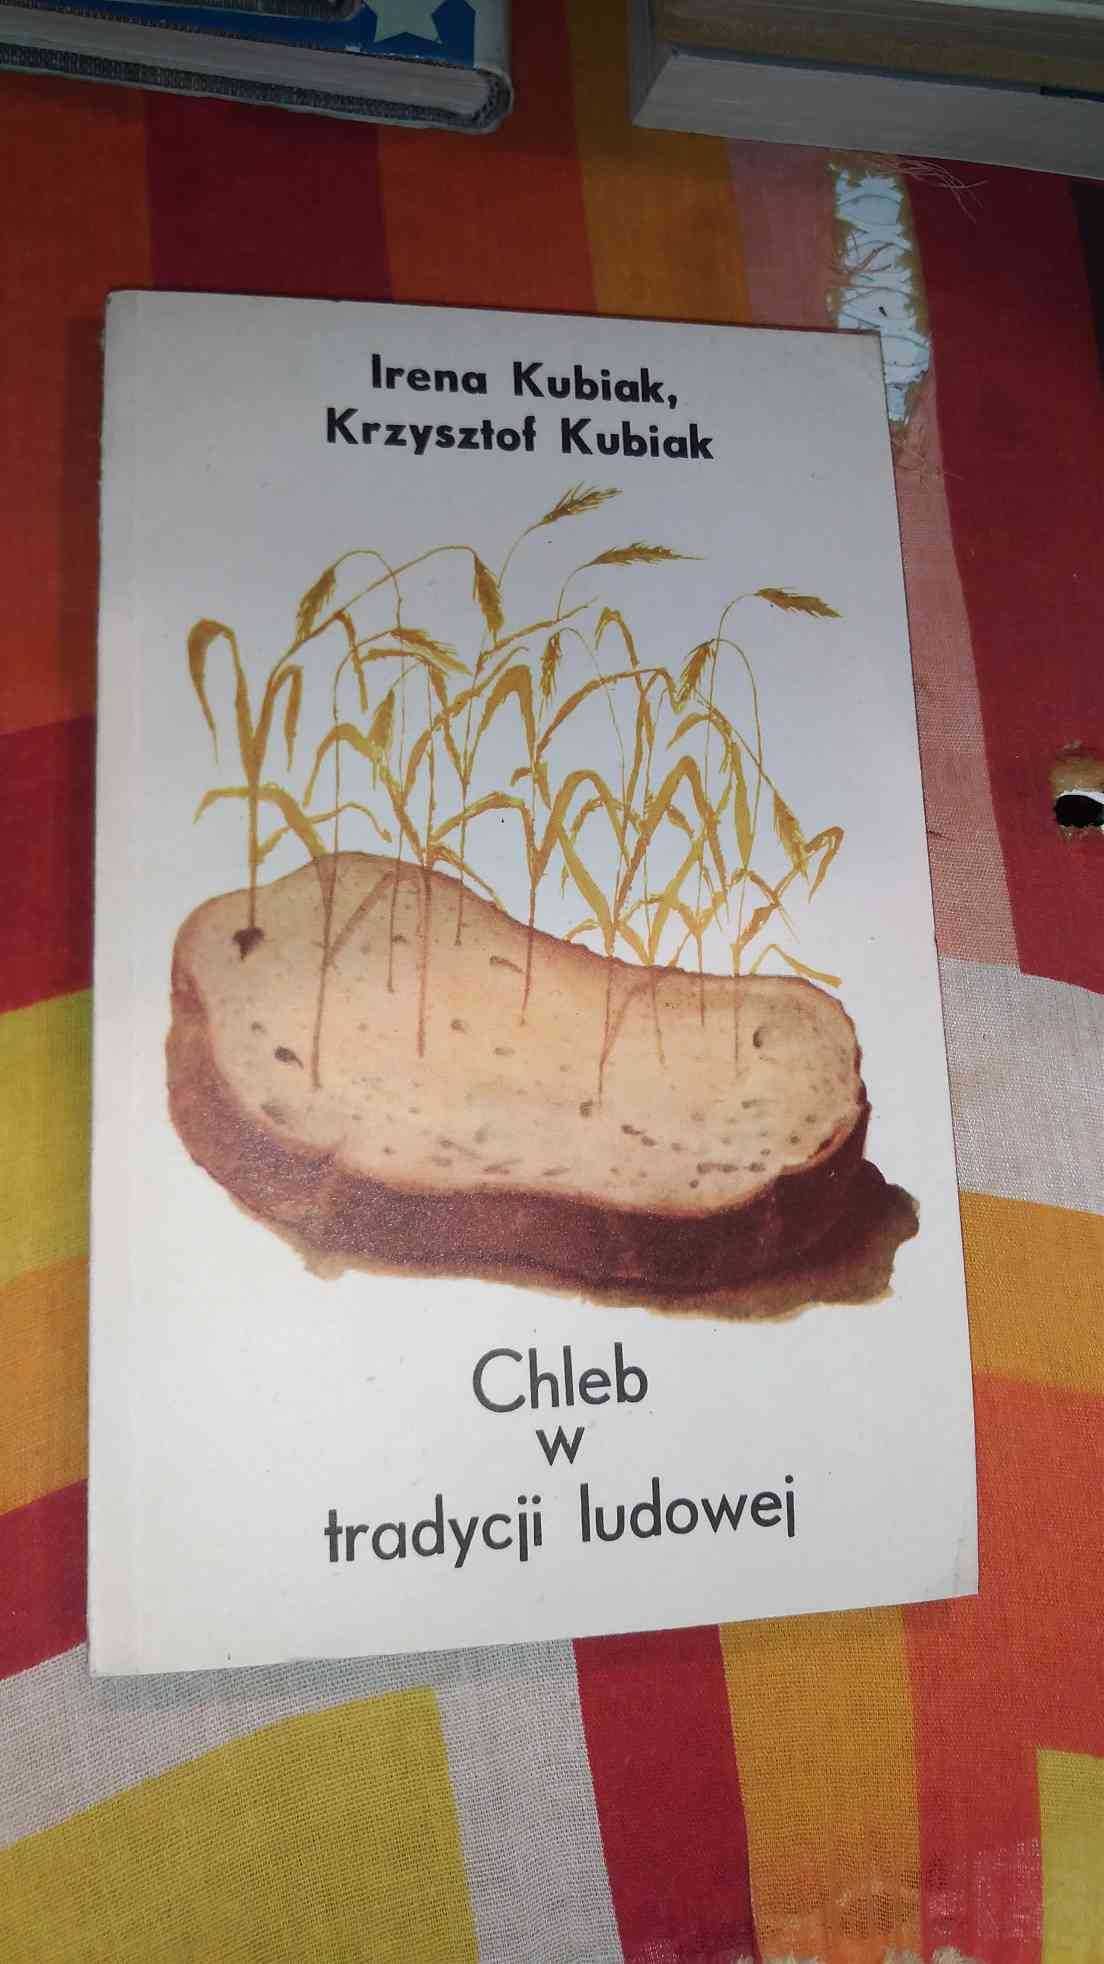 Irena Kubiak, Krzysztol Kubiak
Chleb W tradycji ludowej